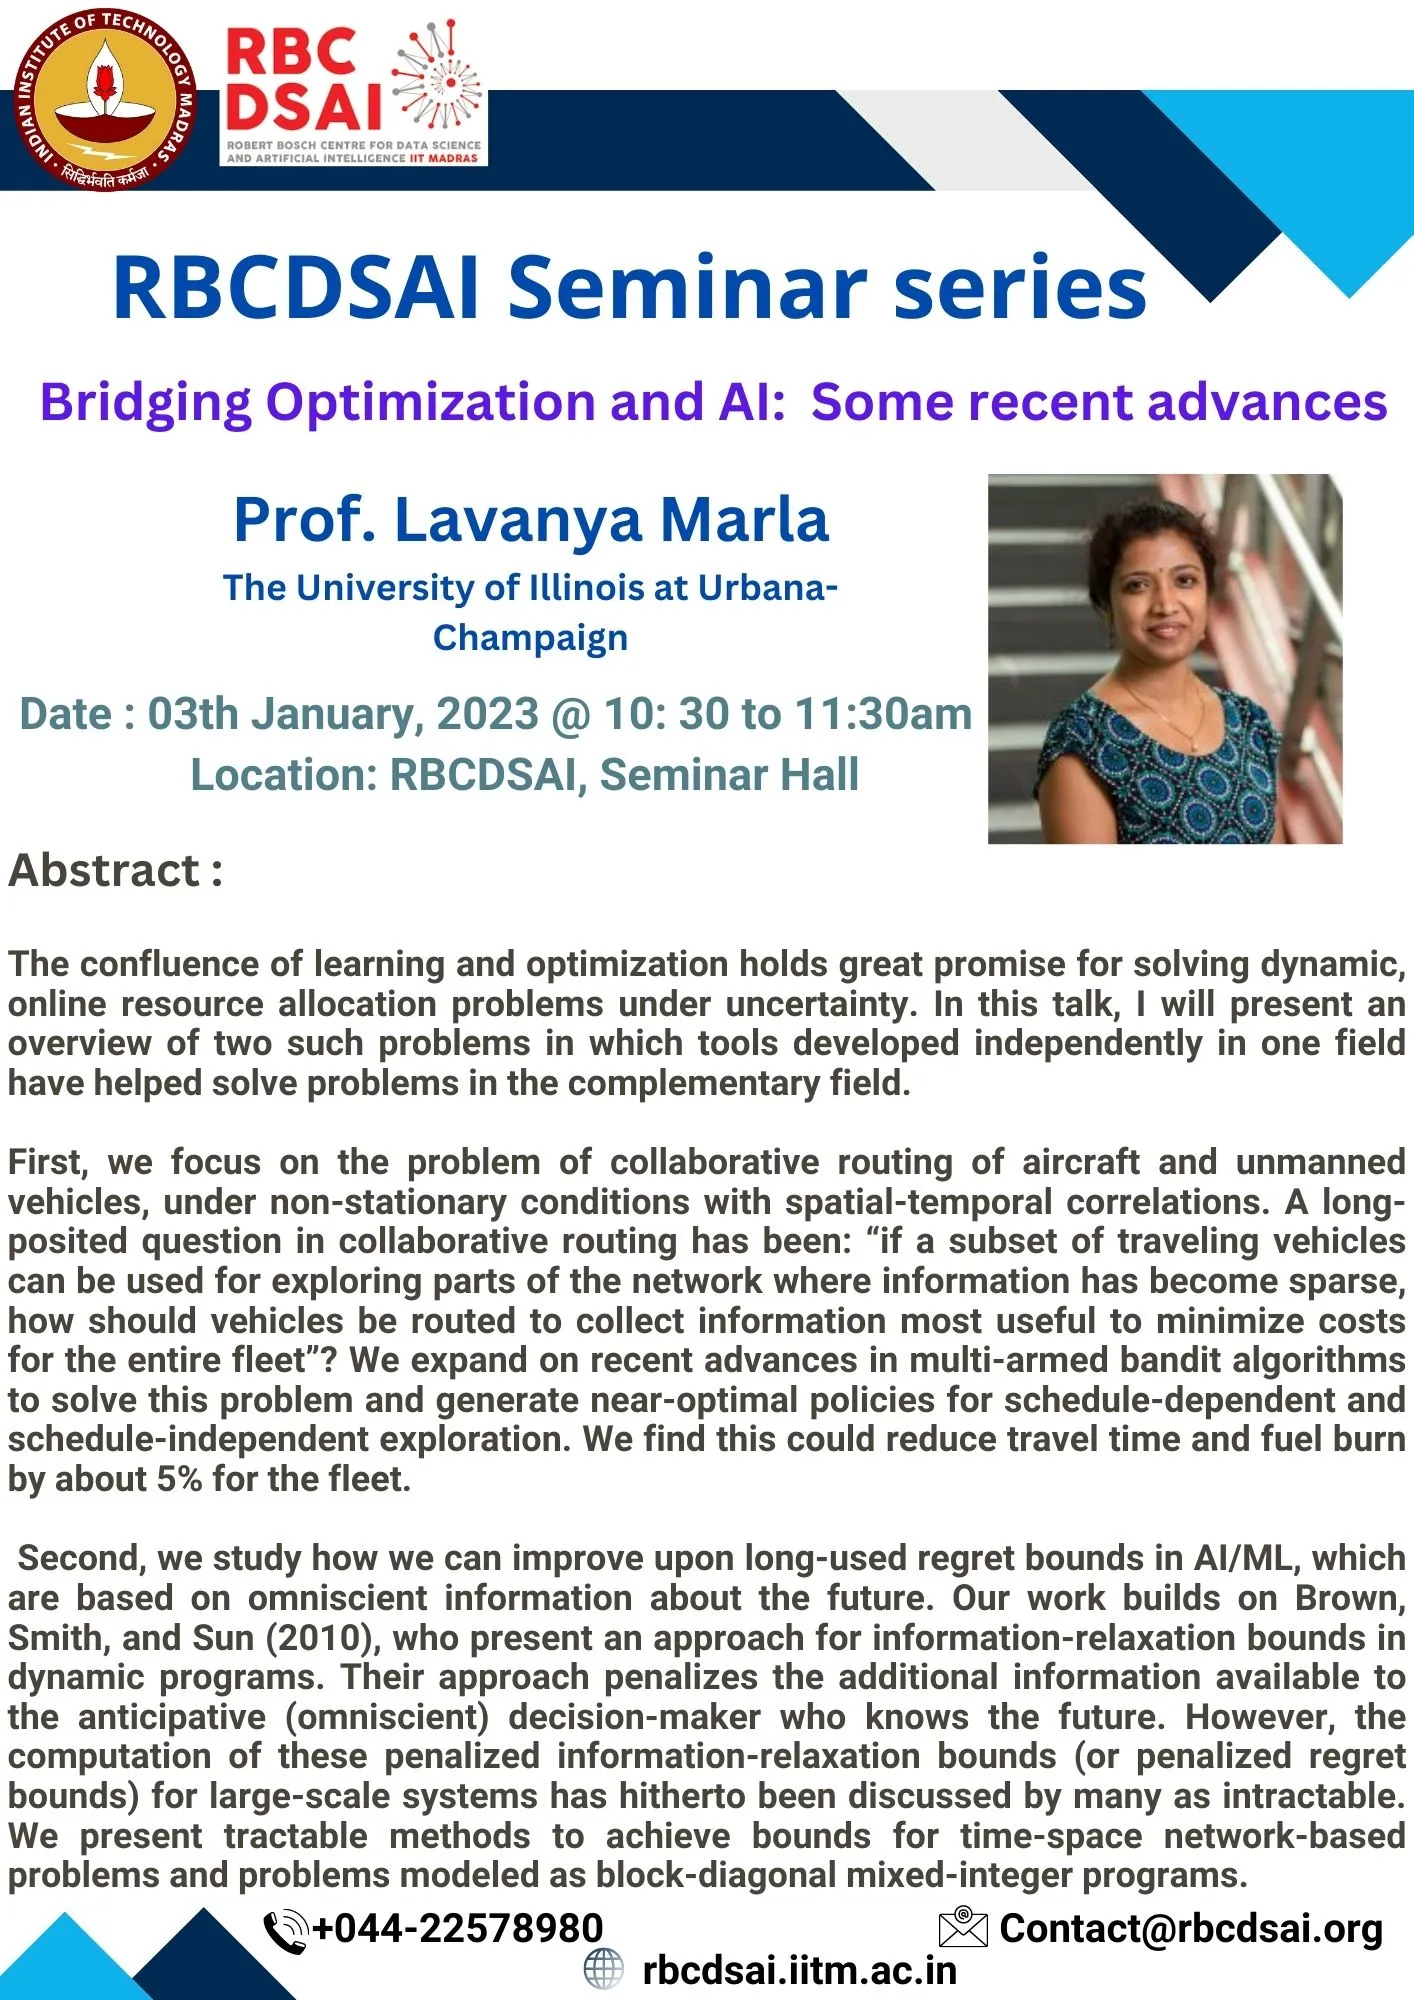 RBCDSAI Seminar Series - Prof Lavanya Marla